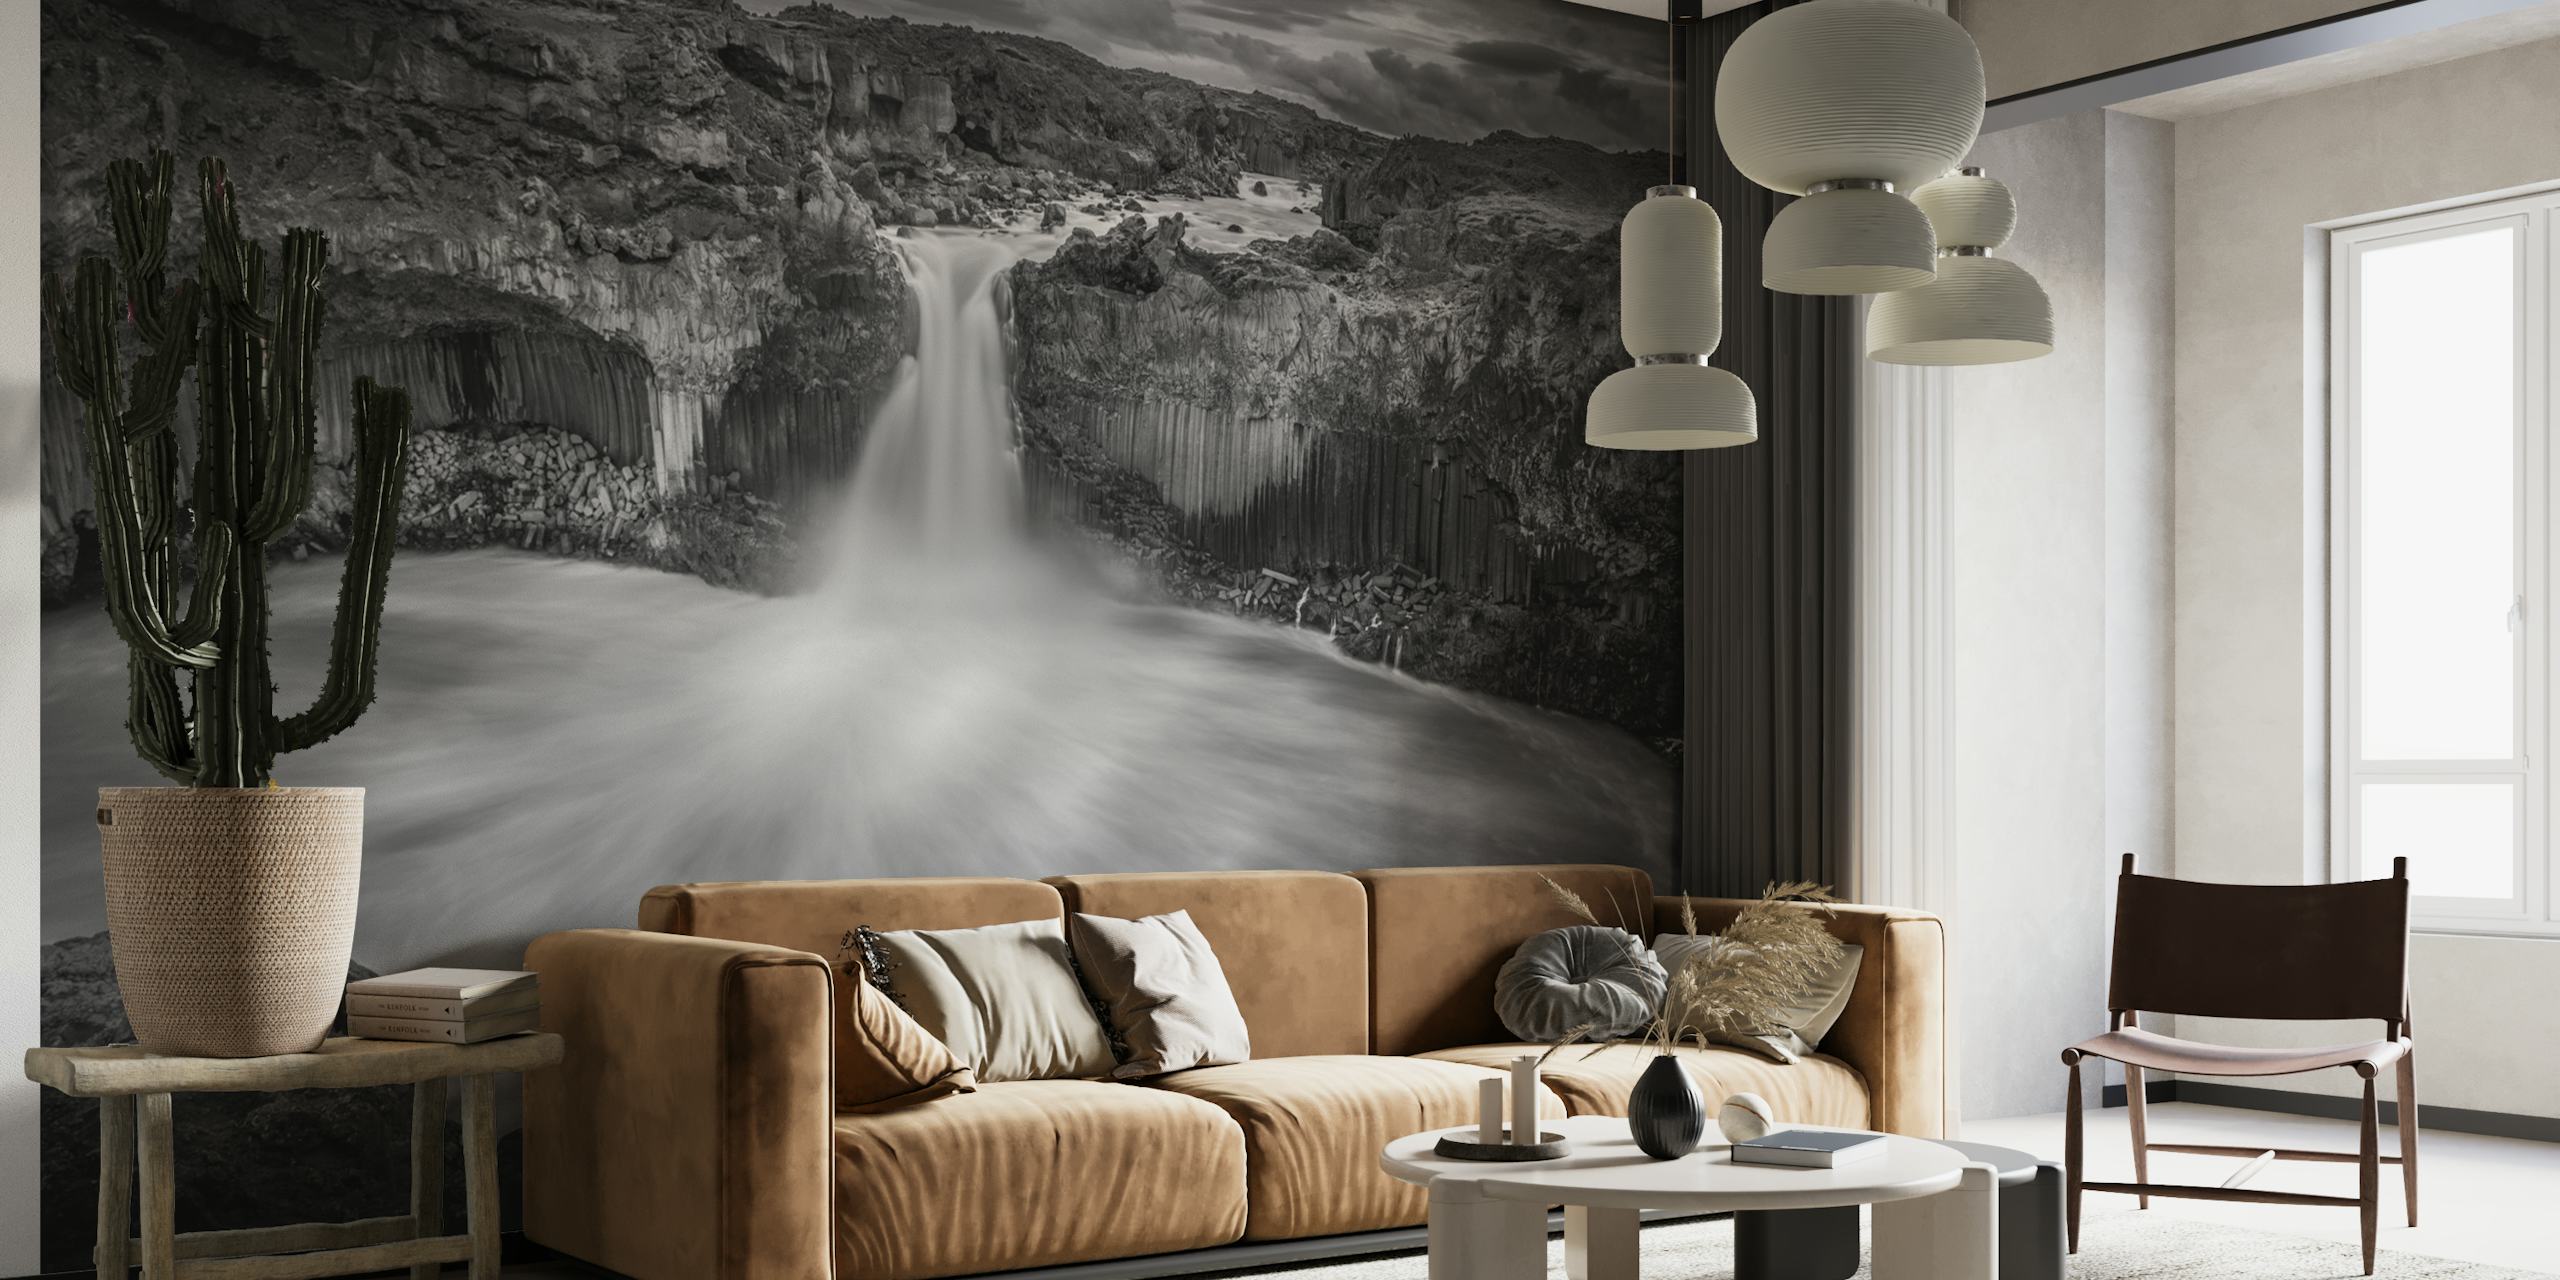 Carta da parati murale con cascata islandese in bianco e nero che mostra contrasti drammatici e la grandiosità della natura.